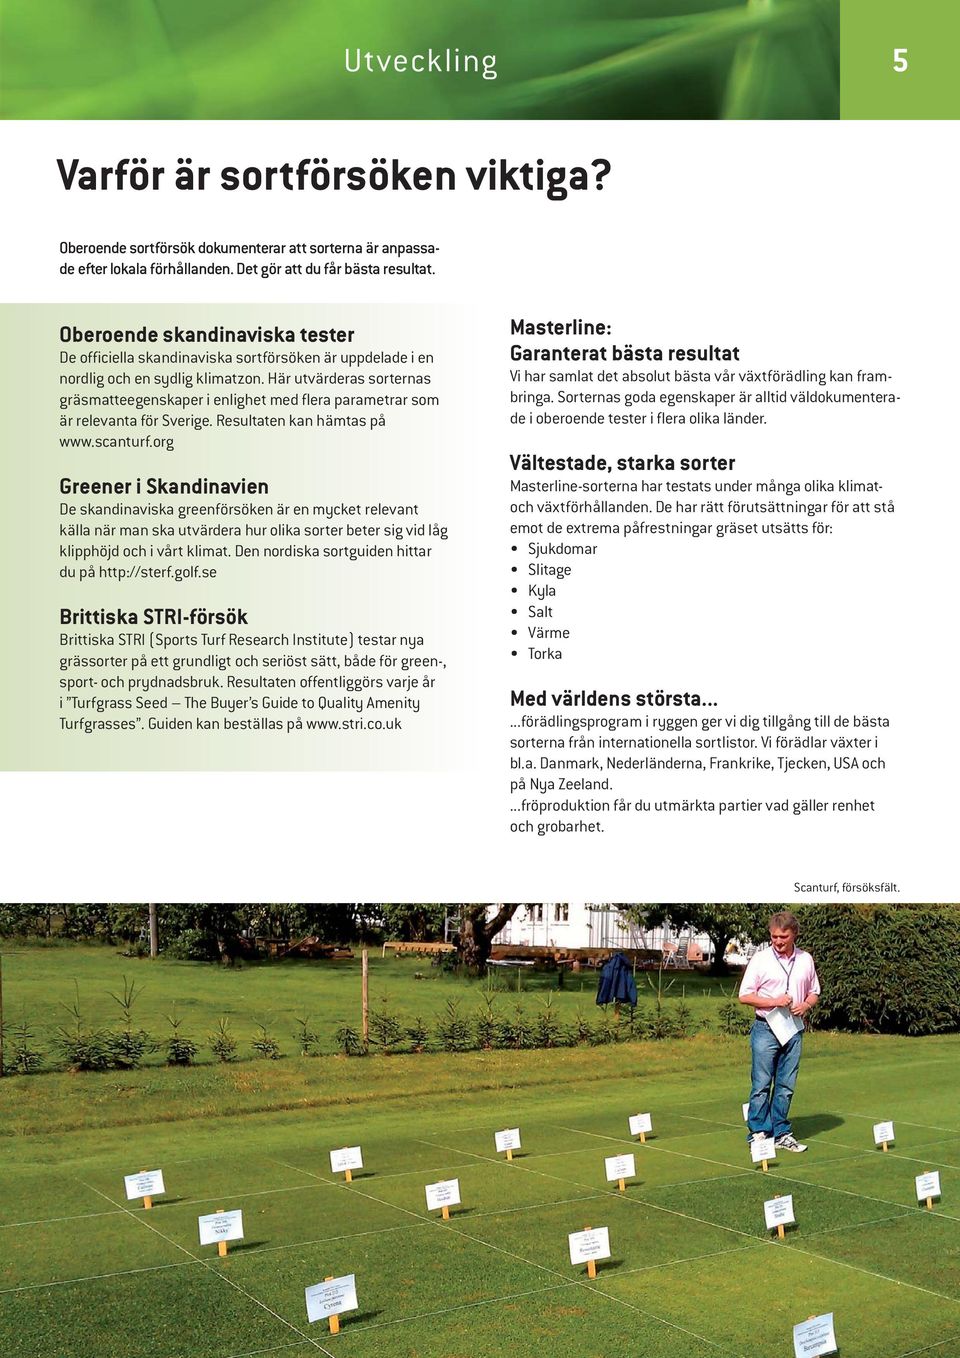 Här utvärderas sorternas gräsmatteegenskaper i enlighet med flera parametrar som är relevanta för Sverige. Resultaten kan hämtas på www.scanturf.